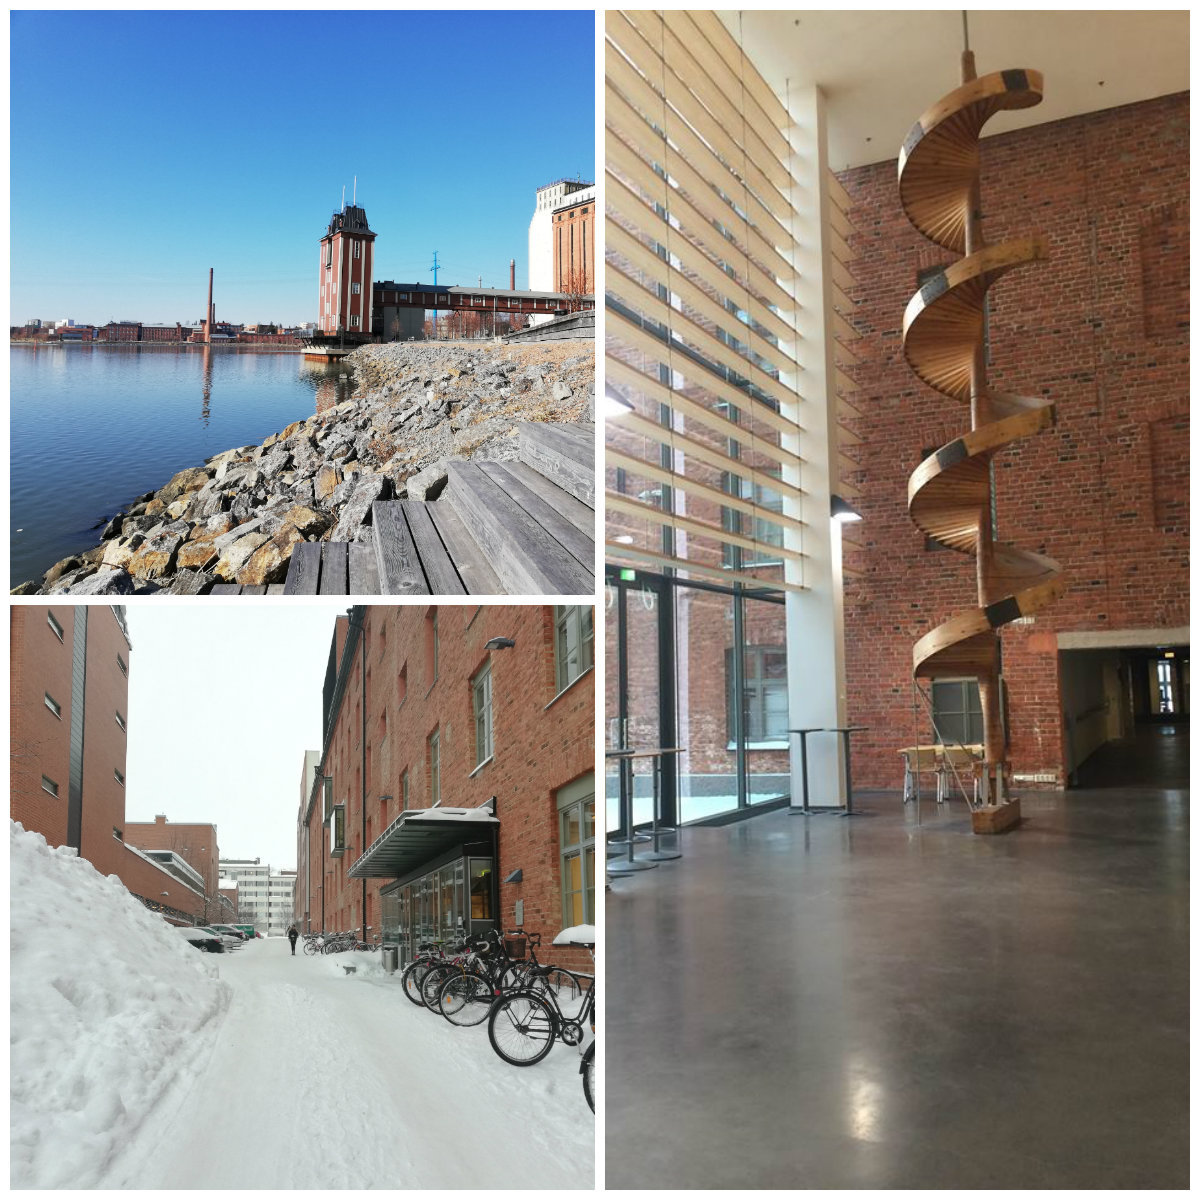 Åbo Akademi University v meste Vaasa- exteriér a interiér školy